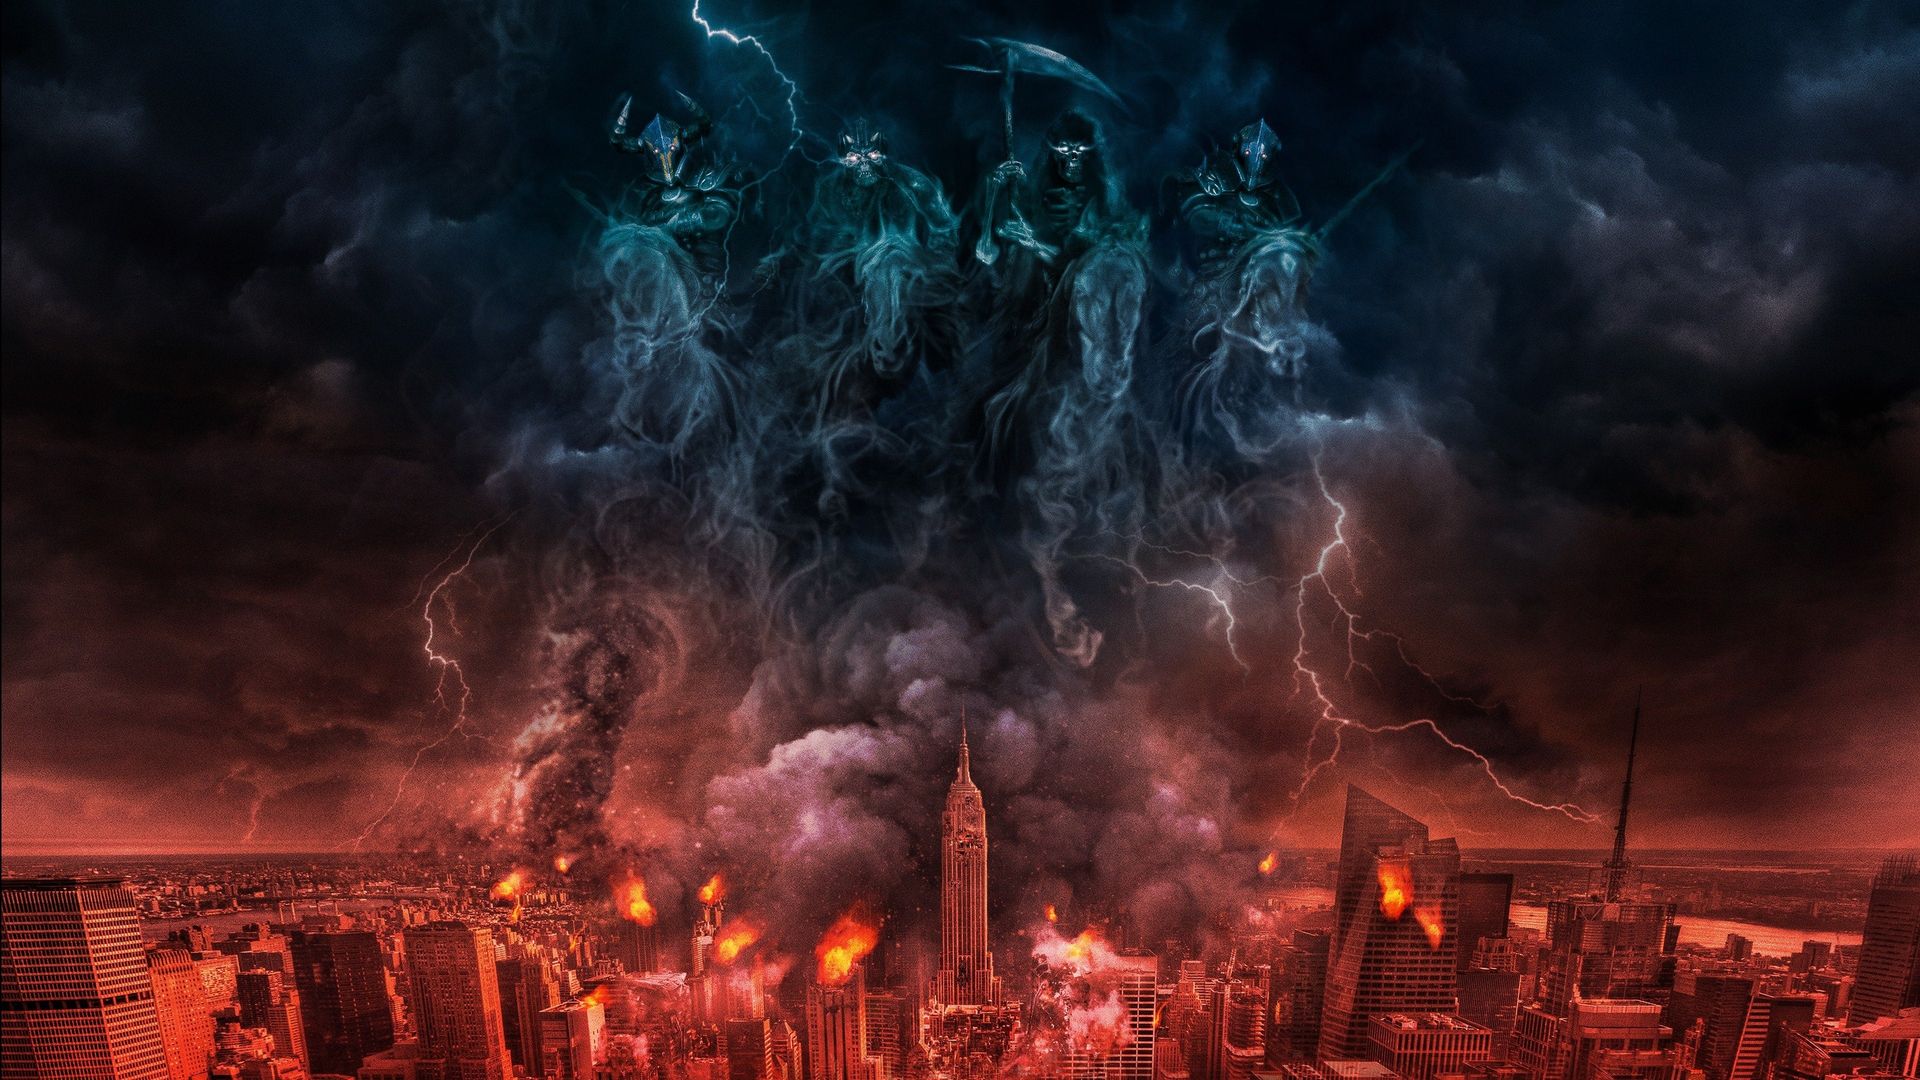 4 Horsemen: Apocalypse background